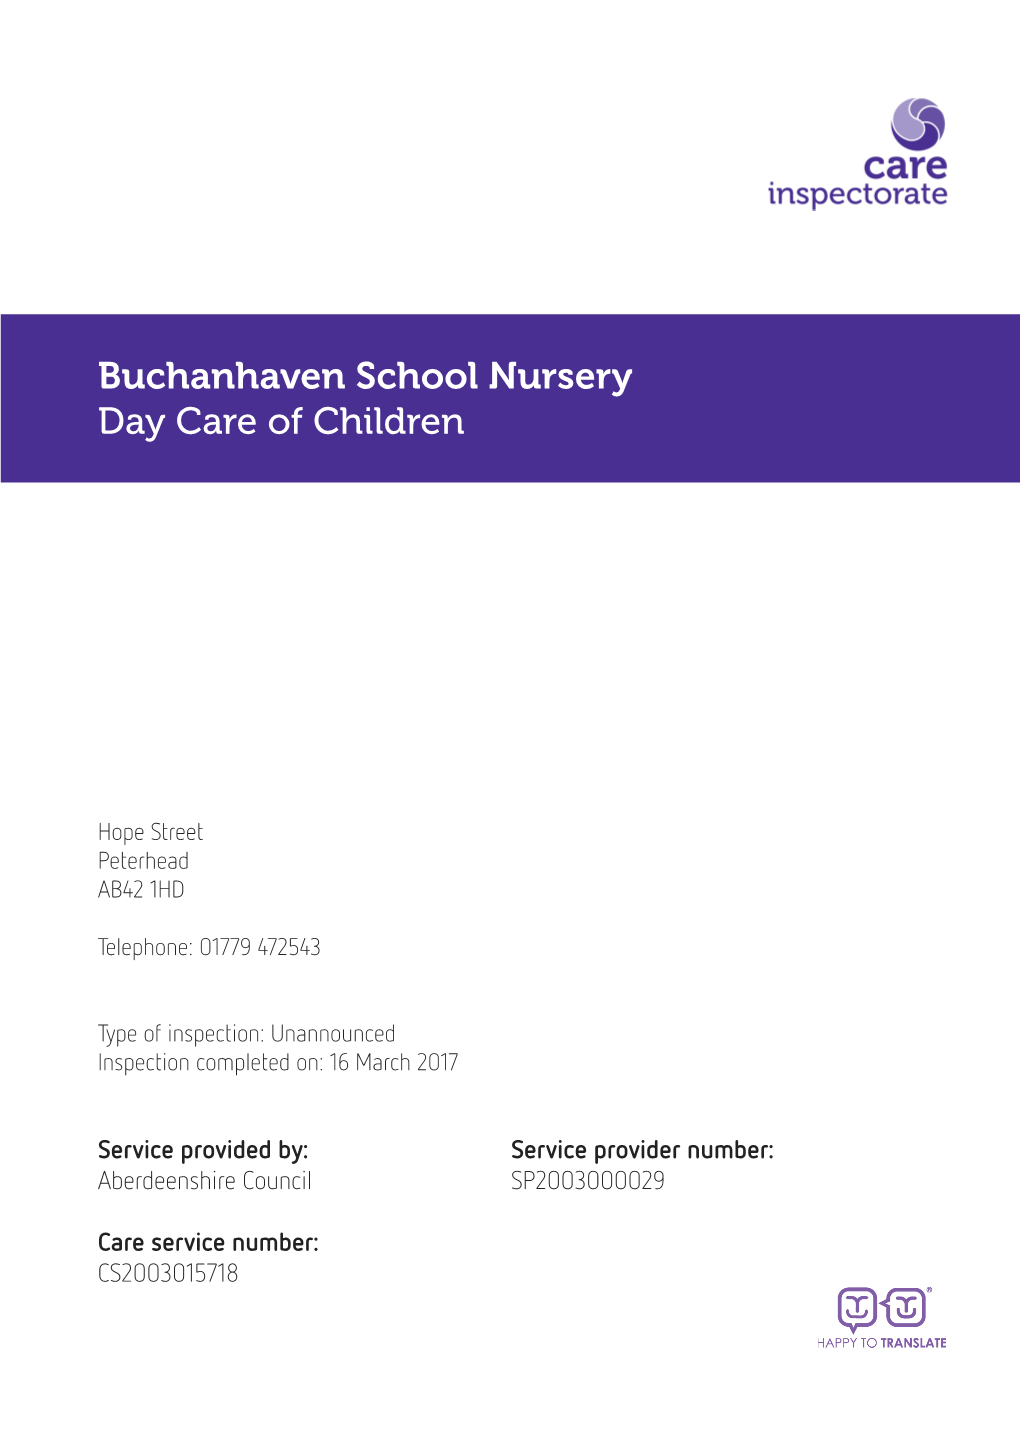 Buchanhaven School Nursery Day Care of Children